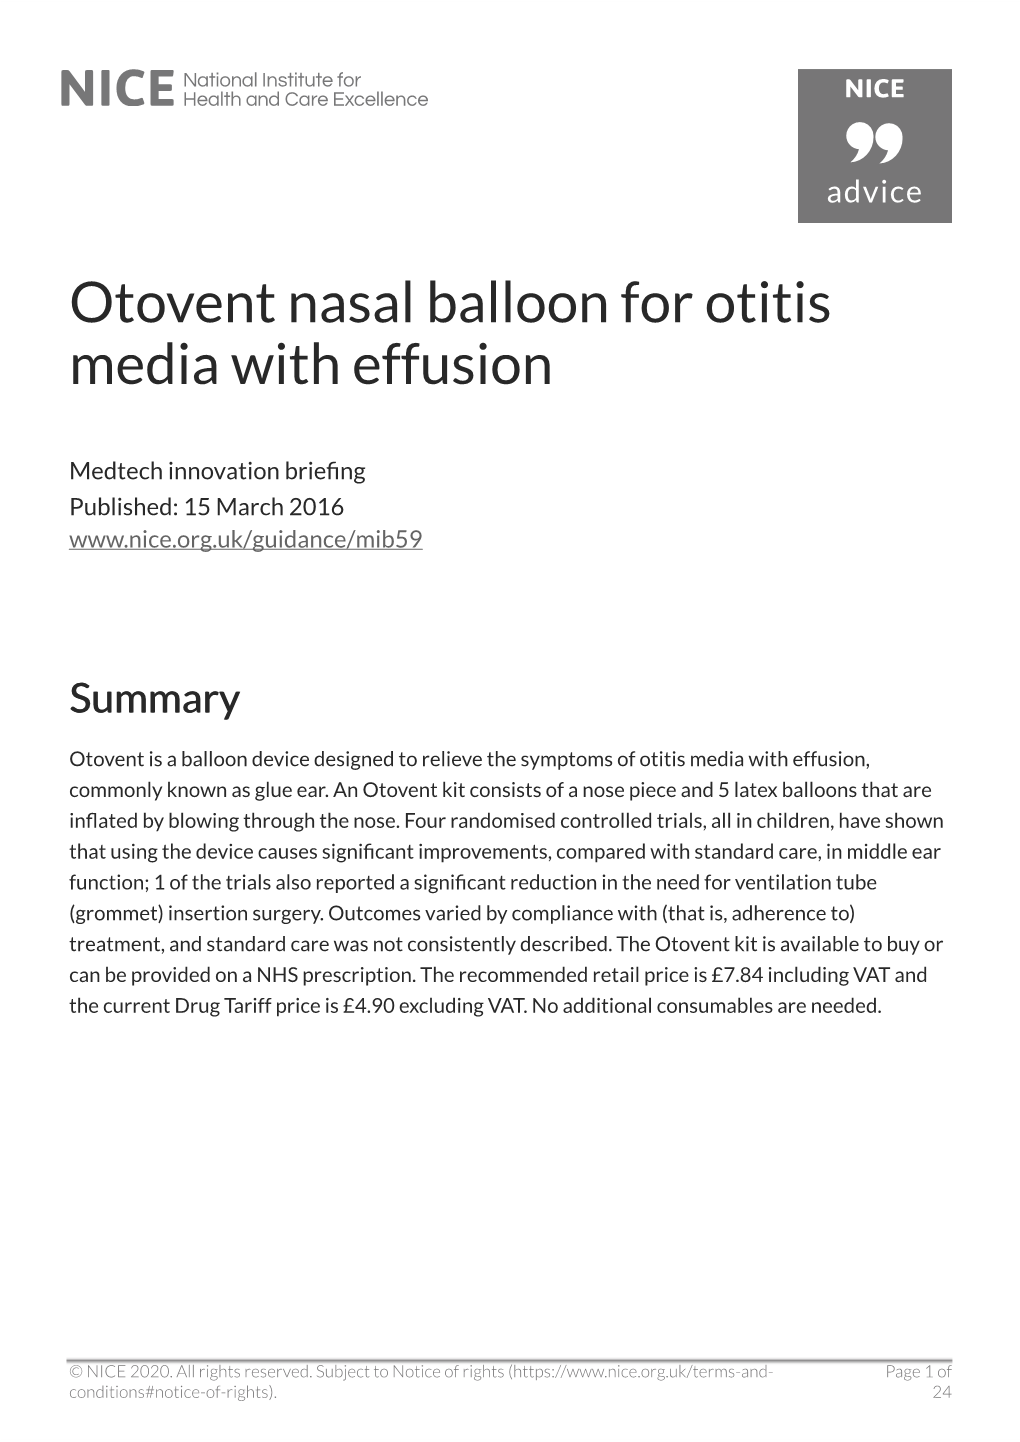 Otovent Nasal Balloon for Otitis Media with Effusion